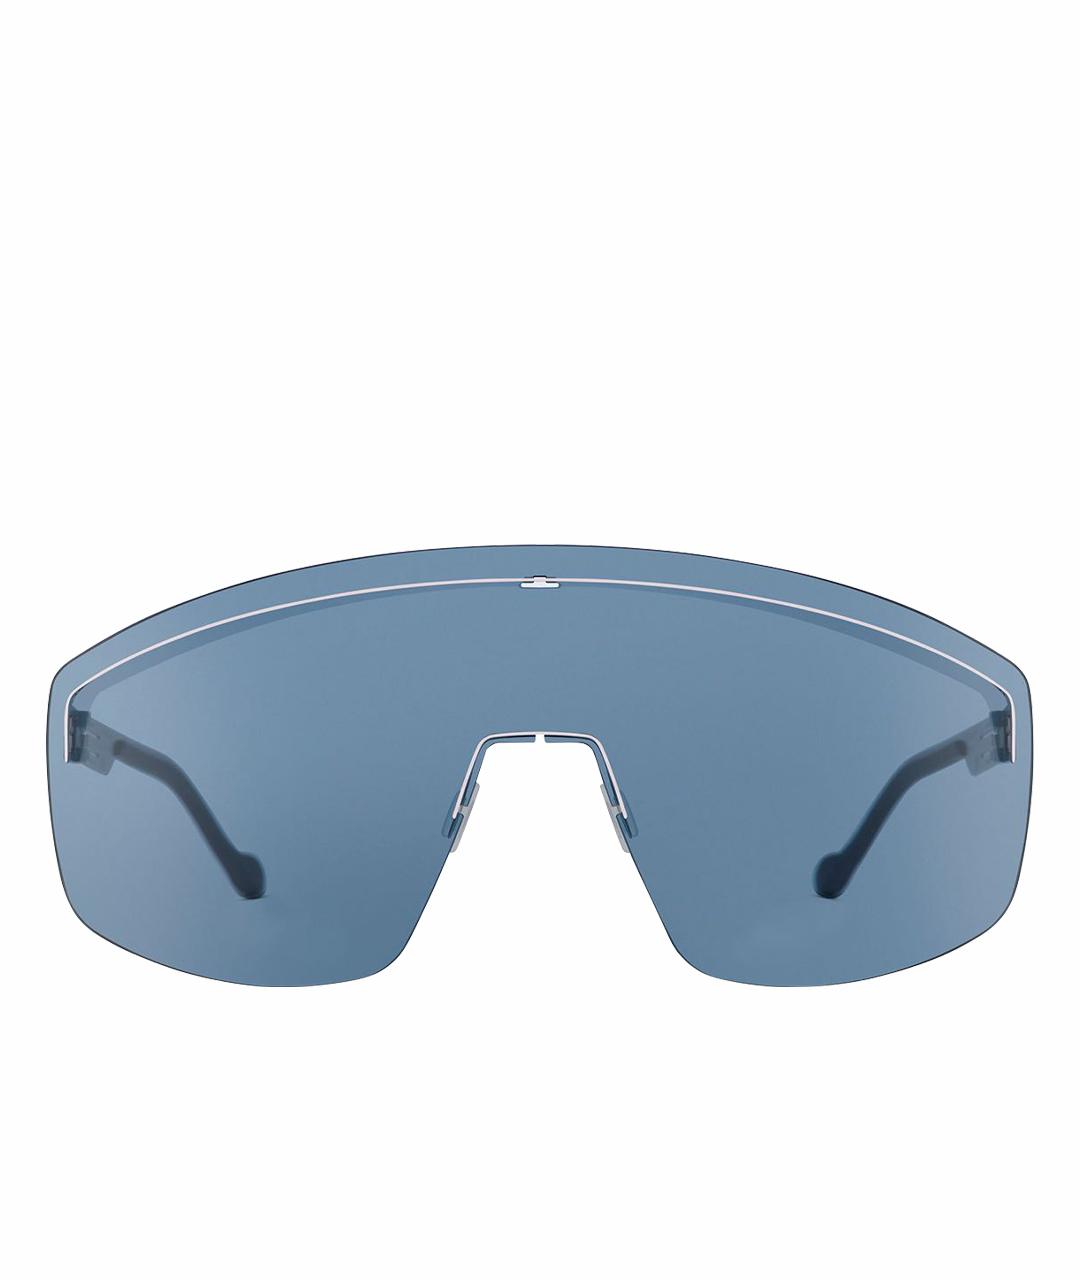 ICBERLIN Голубые металлические солнцезащитные очки, фото 1